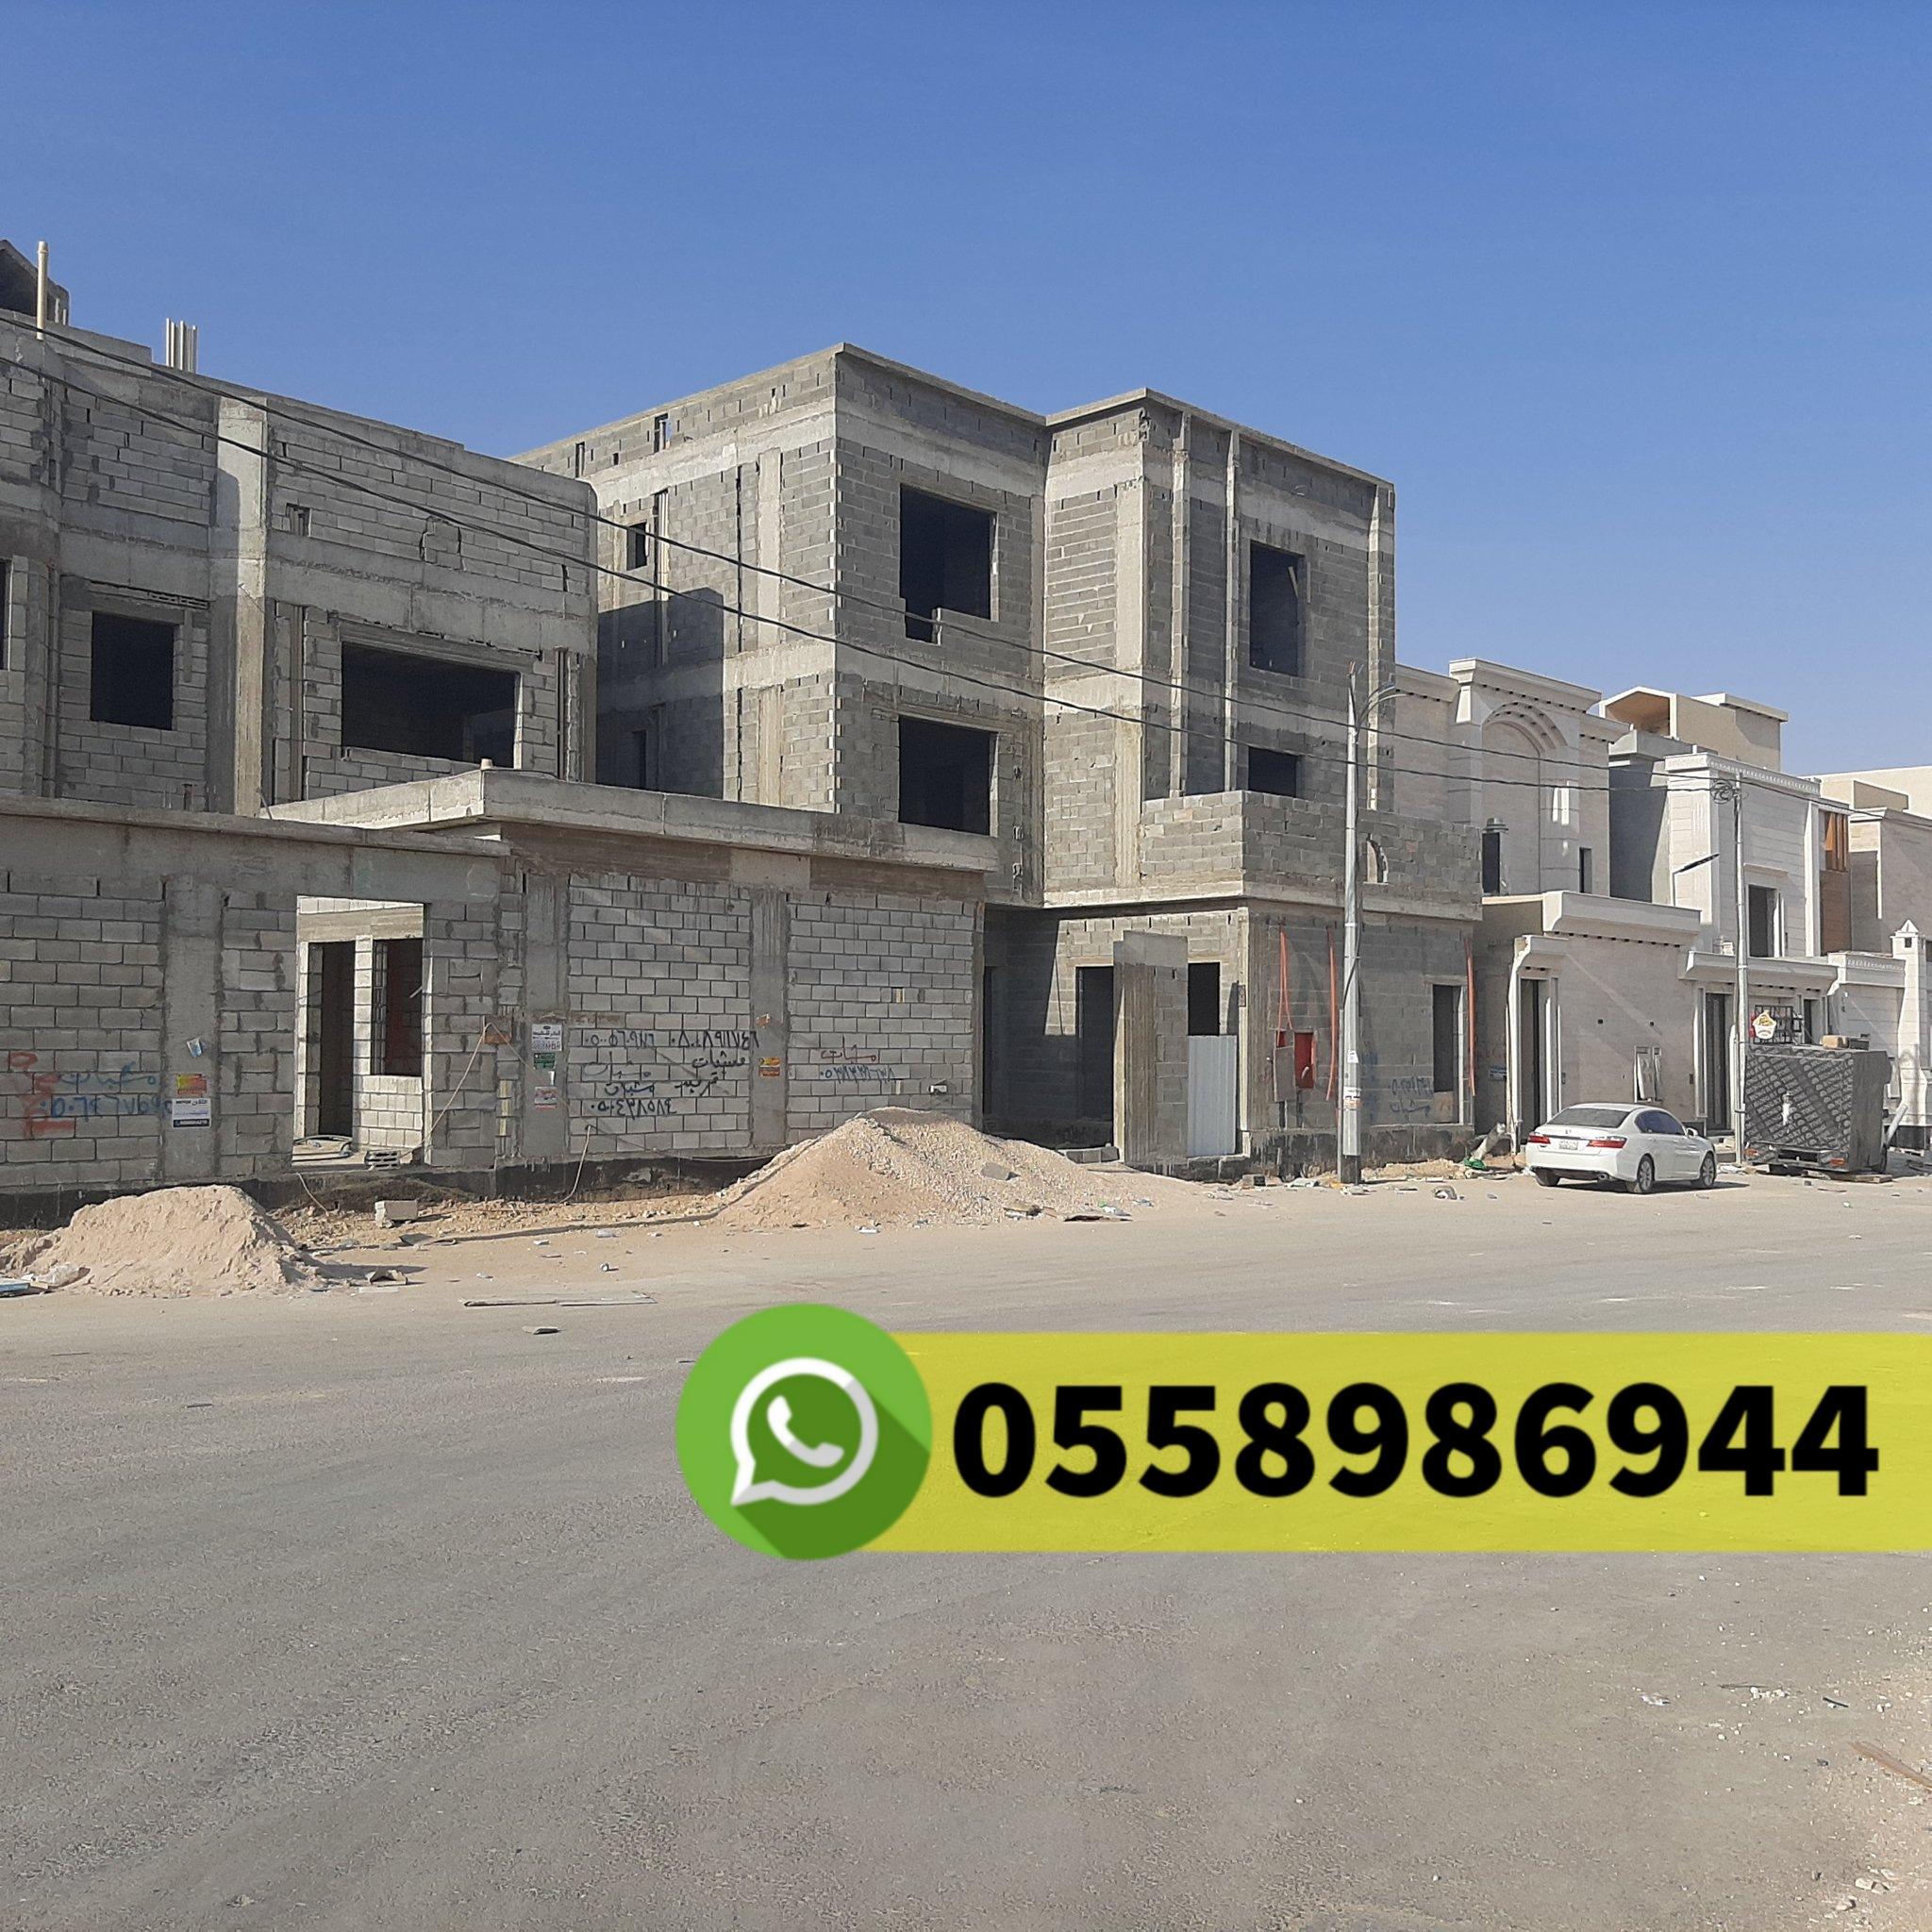 مقاول معماري في حي البساتين جدة جوال 0558986944 450806187